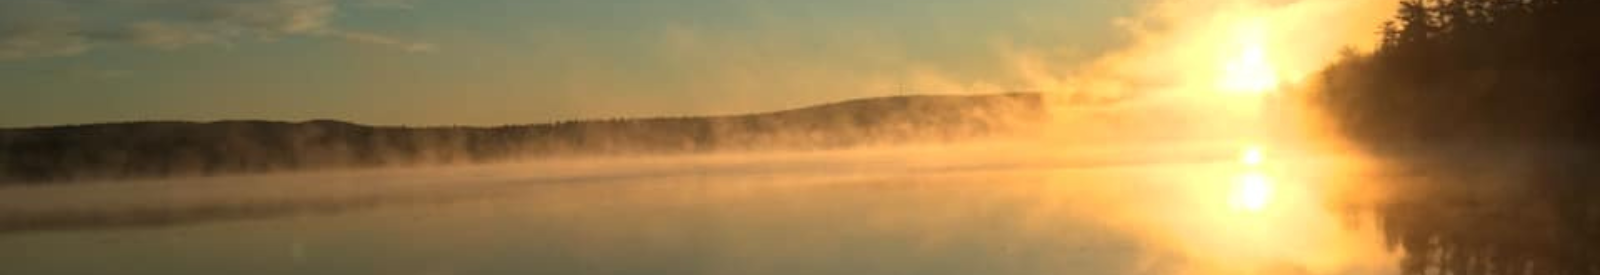 Mirror Lake, NH morning sunrise